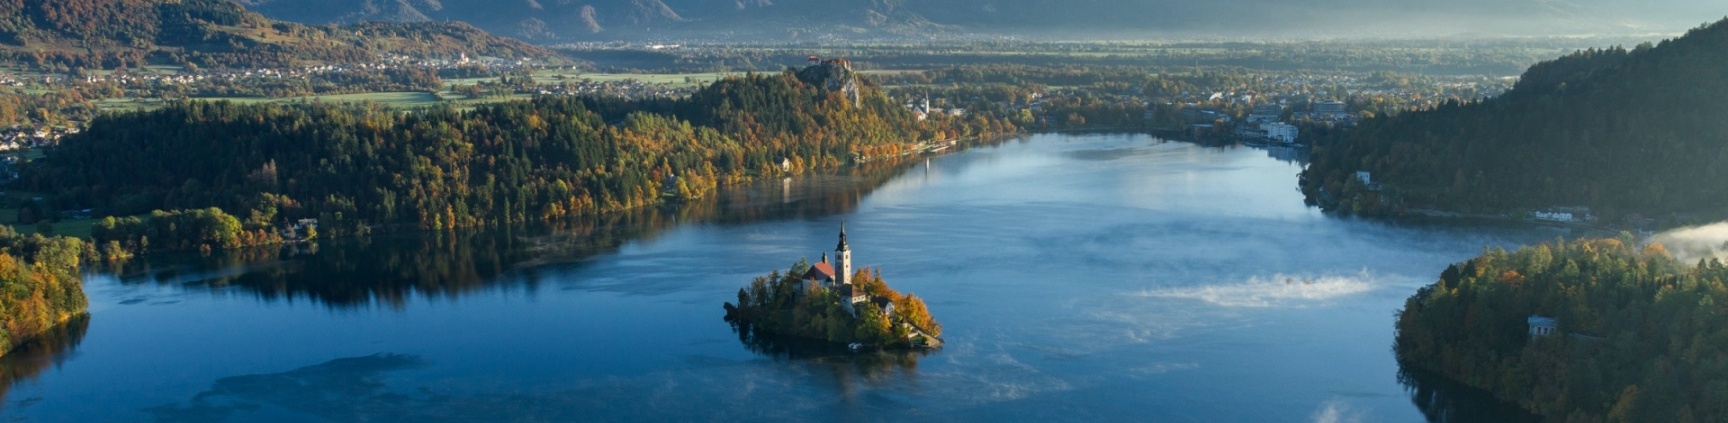 Der Bleder See in Slowenien mit seiner romantischen Klosterkirche.